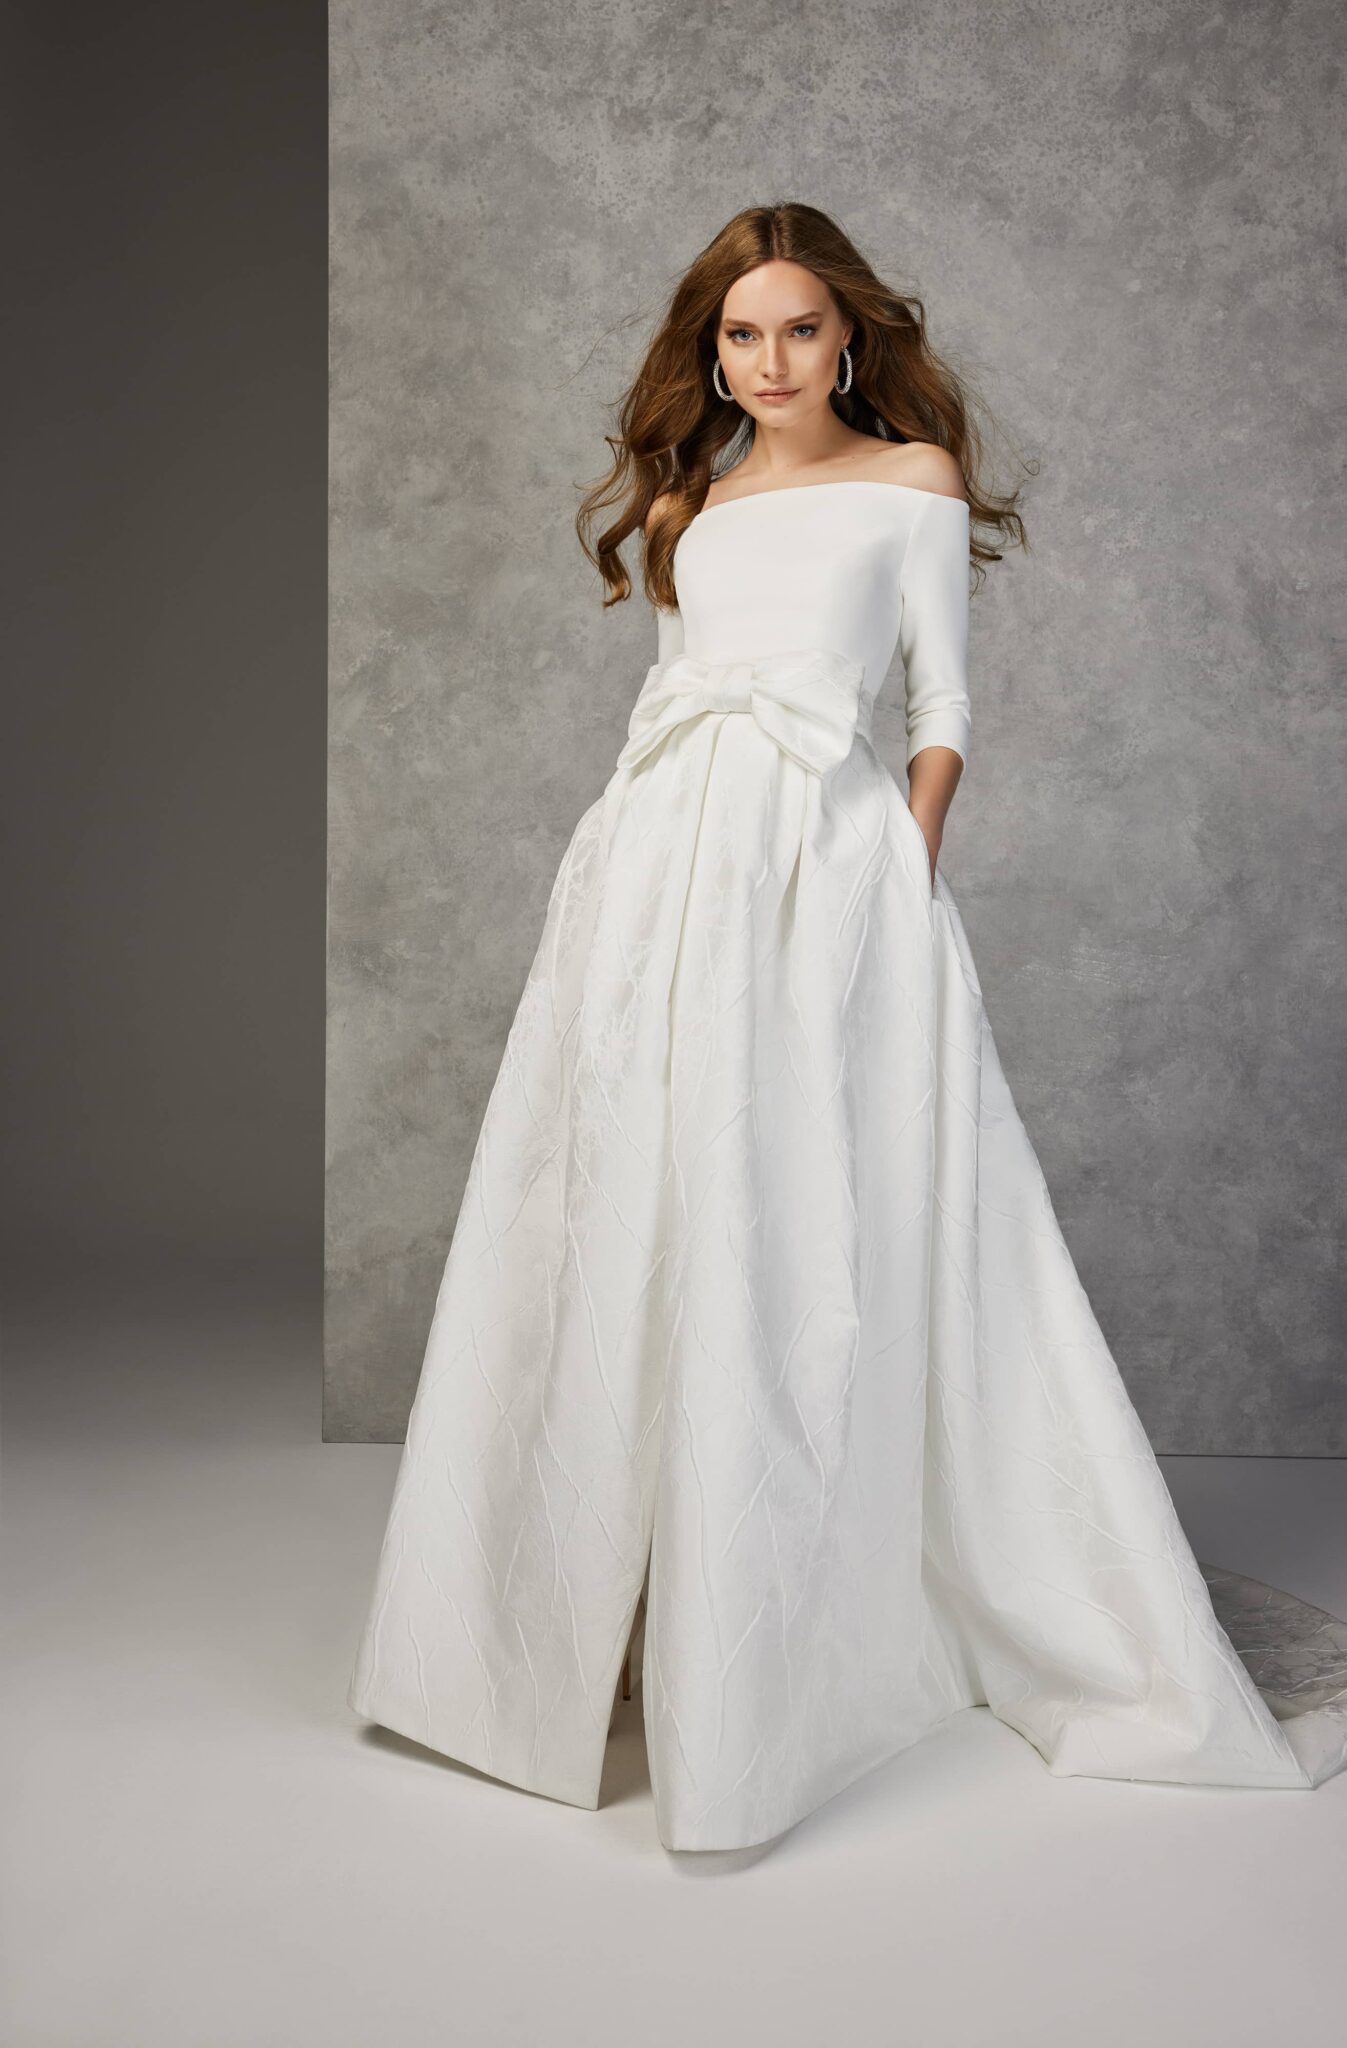 2319 Jesus Peiro wedding dress